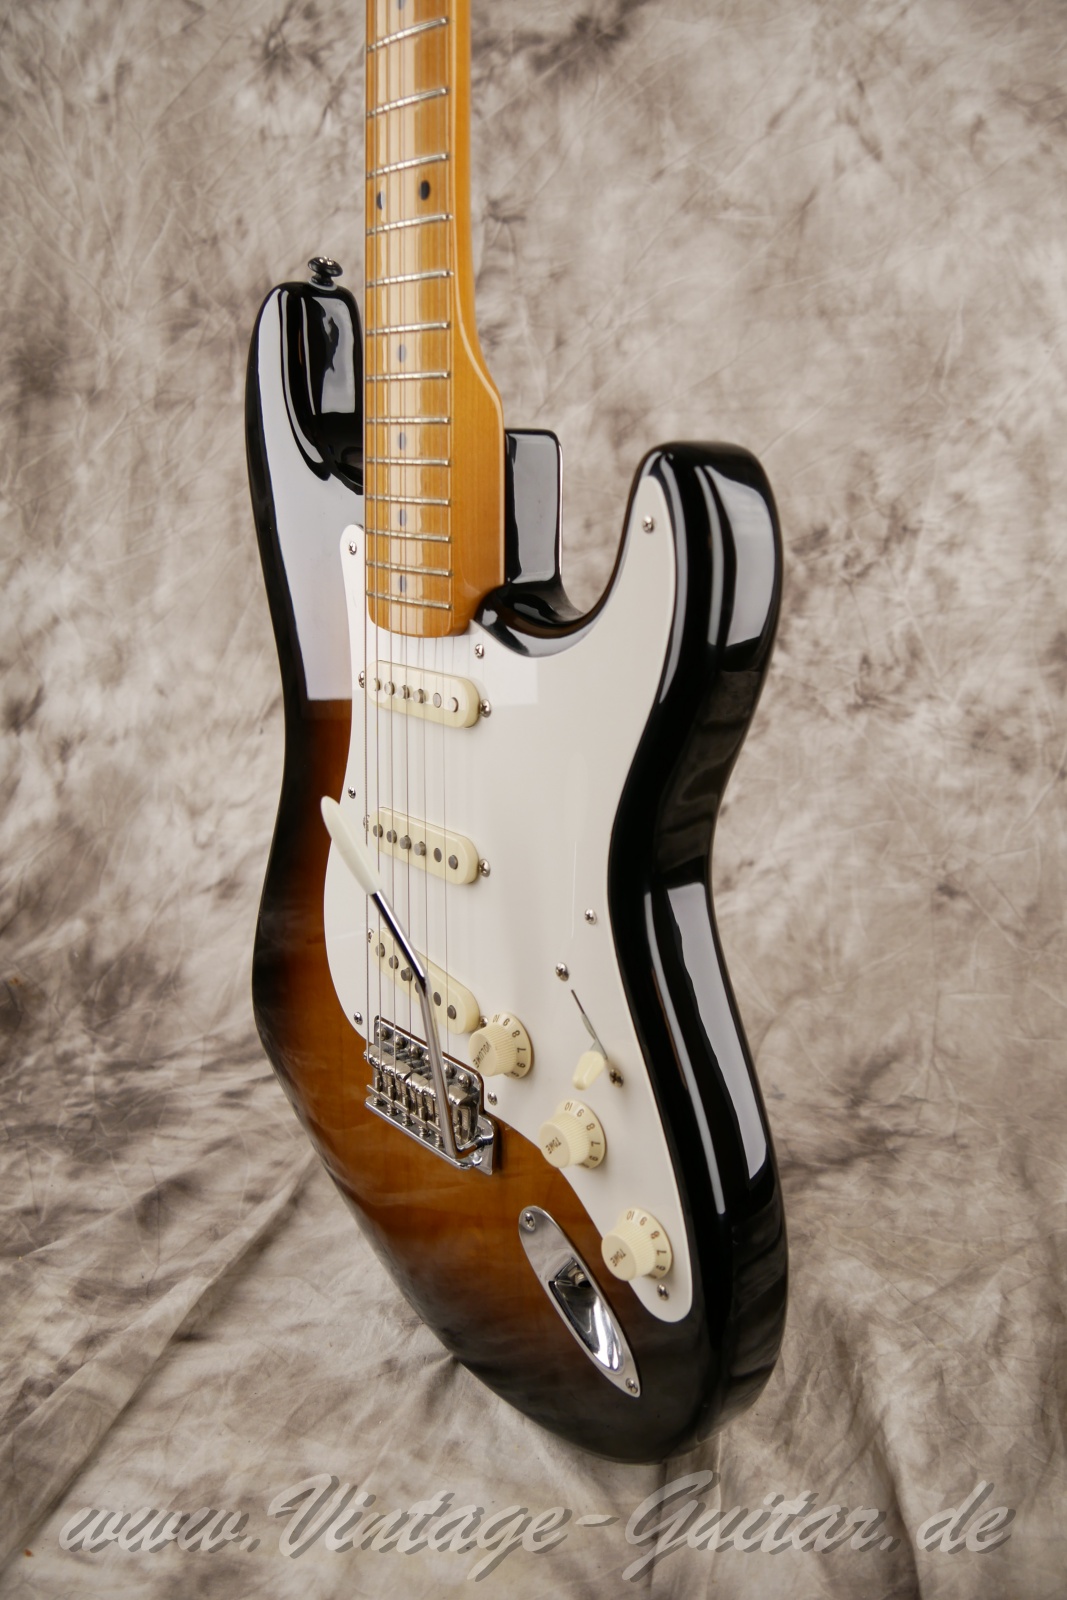 Fener-Stratocaster-Classic-player-series-50s-2007-sunburst-010.jpg